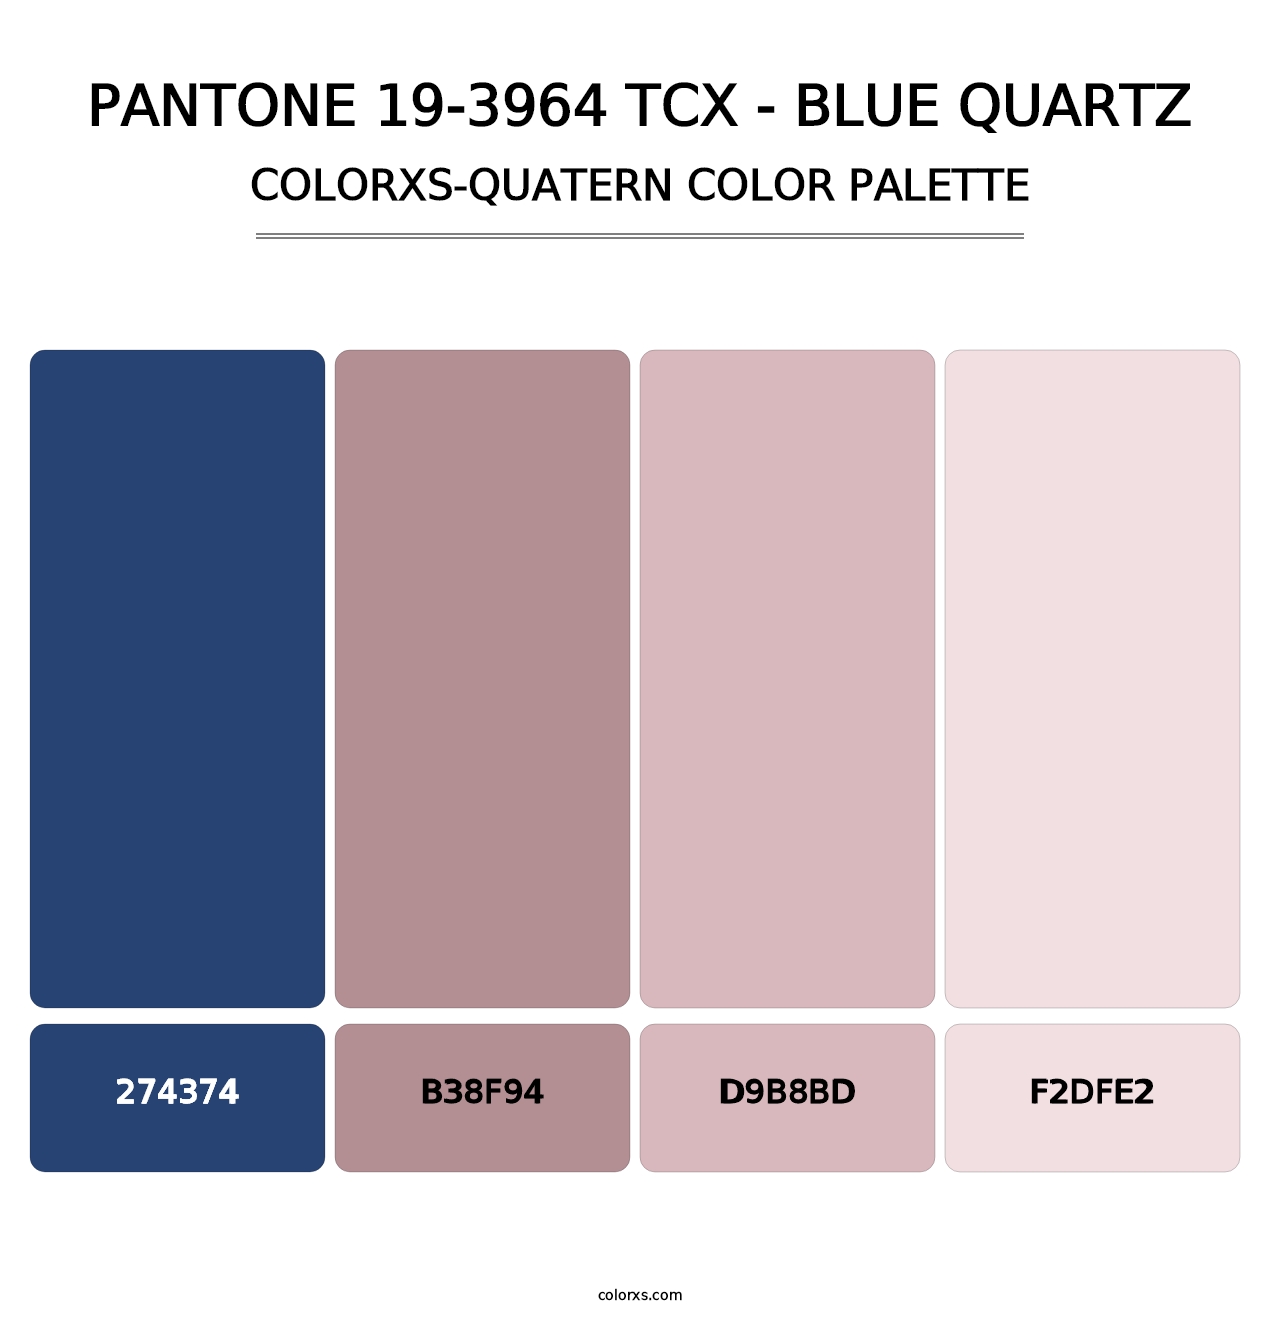 PANTONE 19-3964 TCX - Blue Quartz - Colorxs Quatern Palette